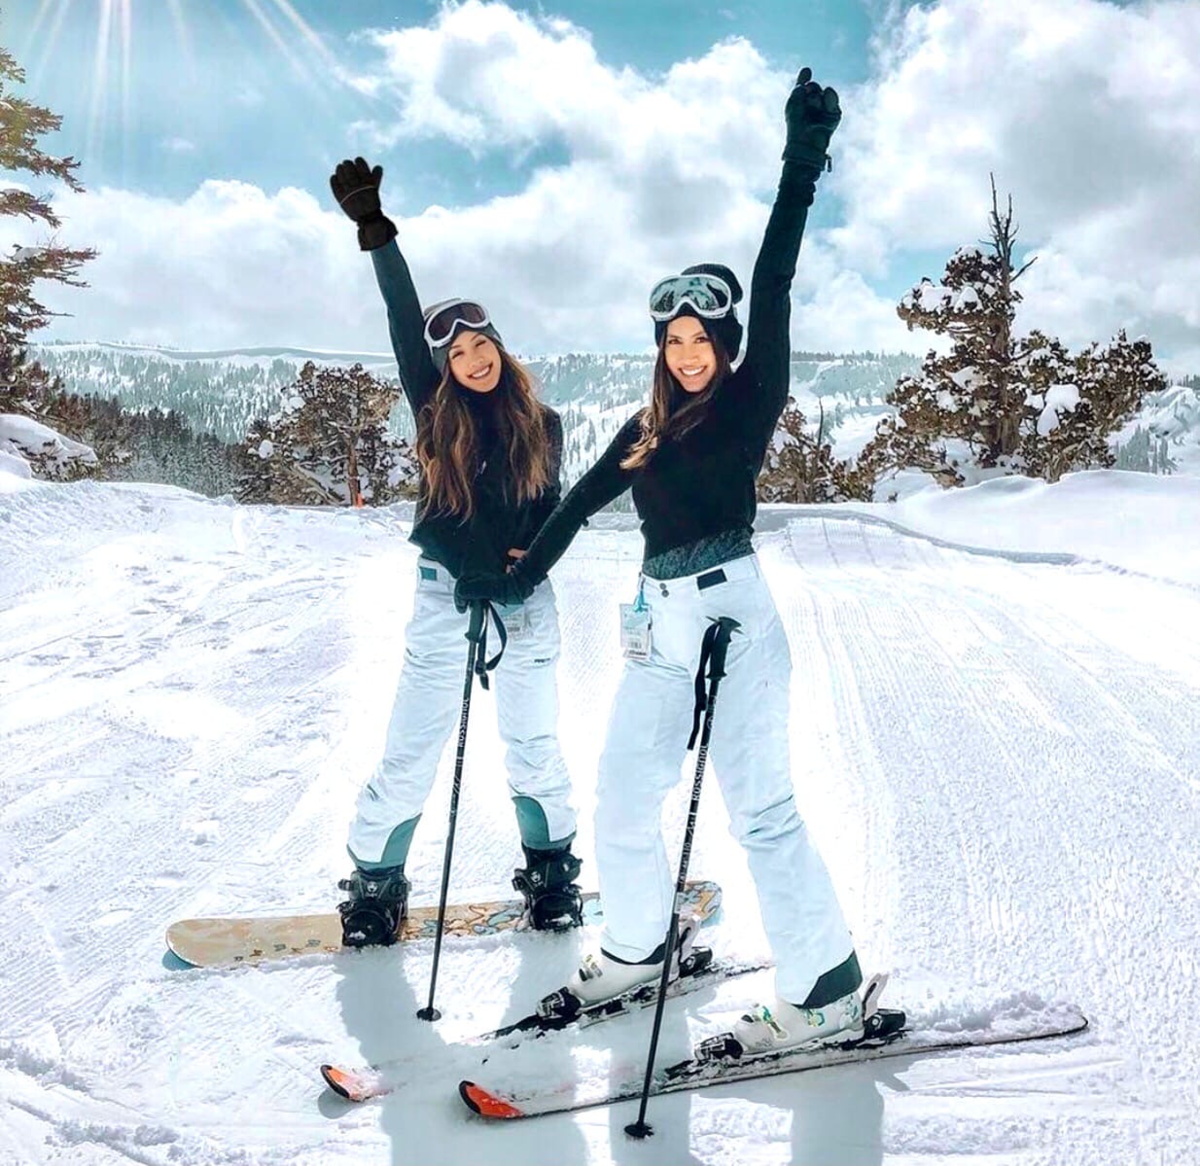 Покататься на горнолыжном курорте. Катание на горных лыжах. Девушка на лыжах. Покататься на лыжах. Лыжи зимой.